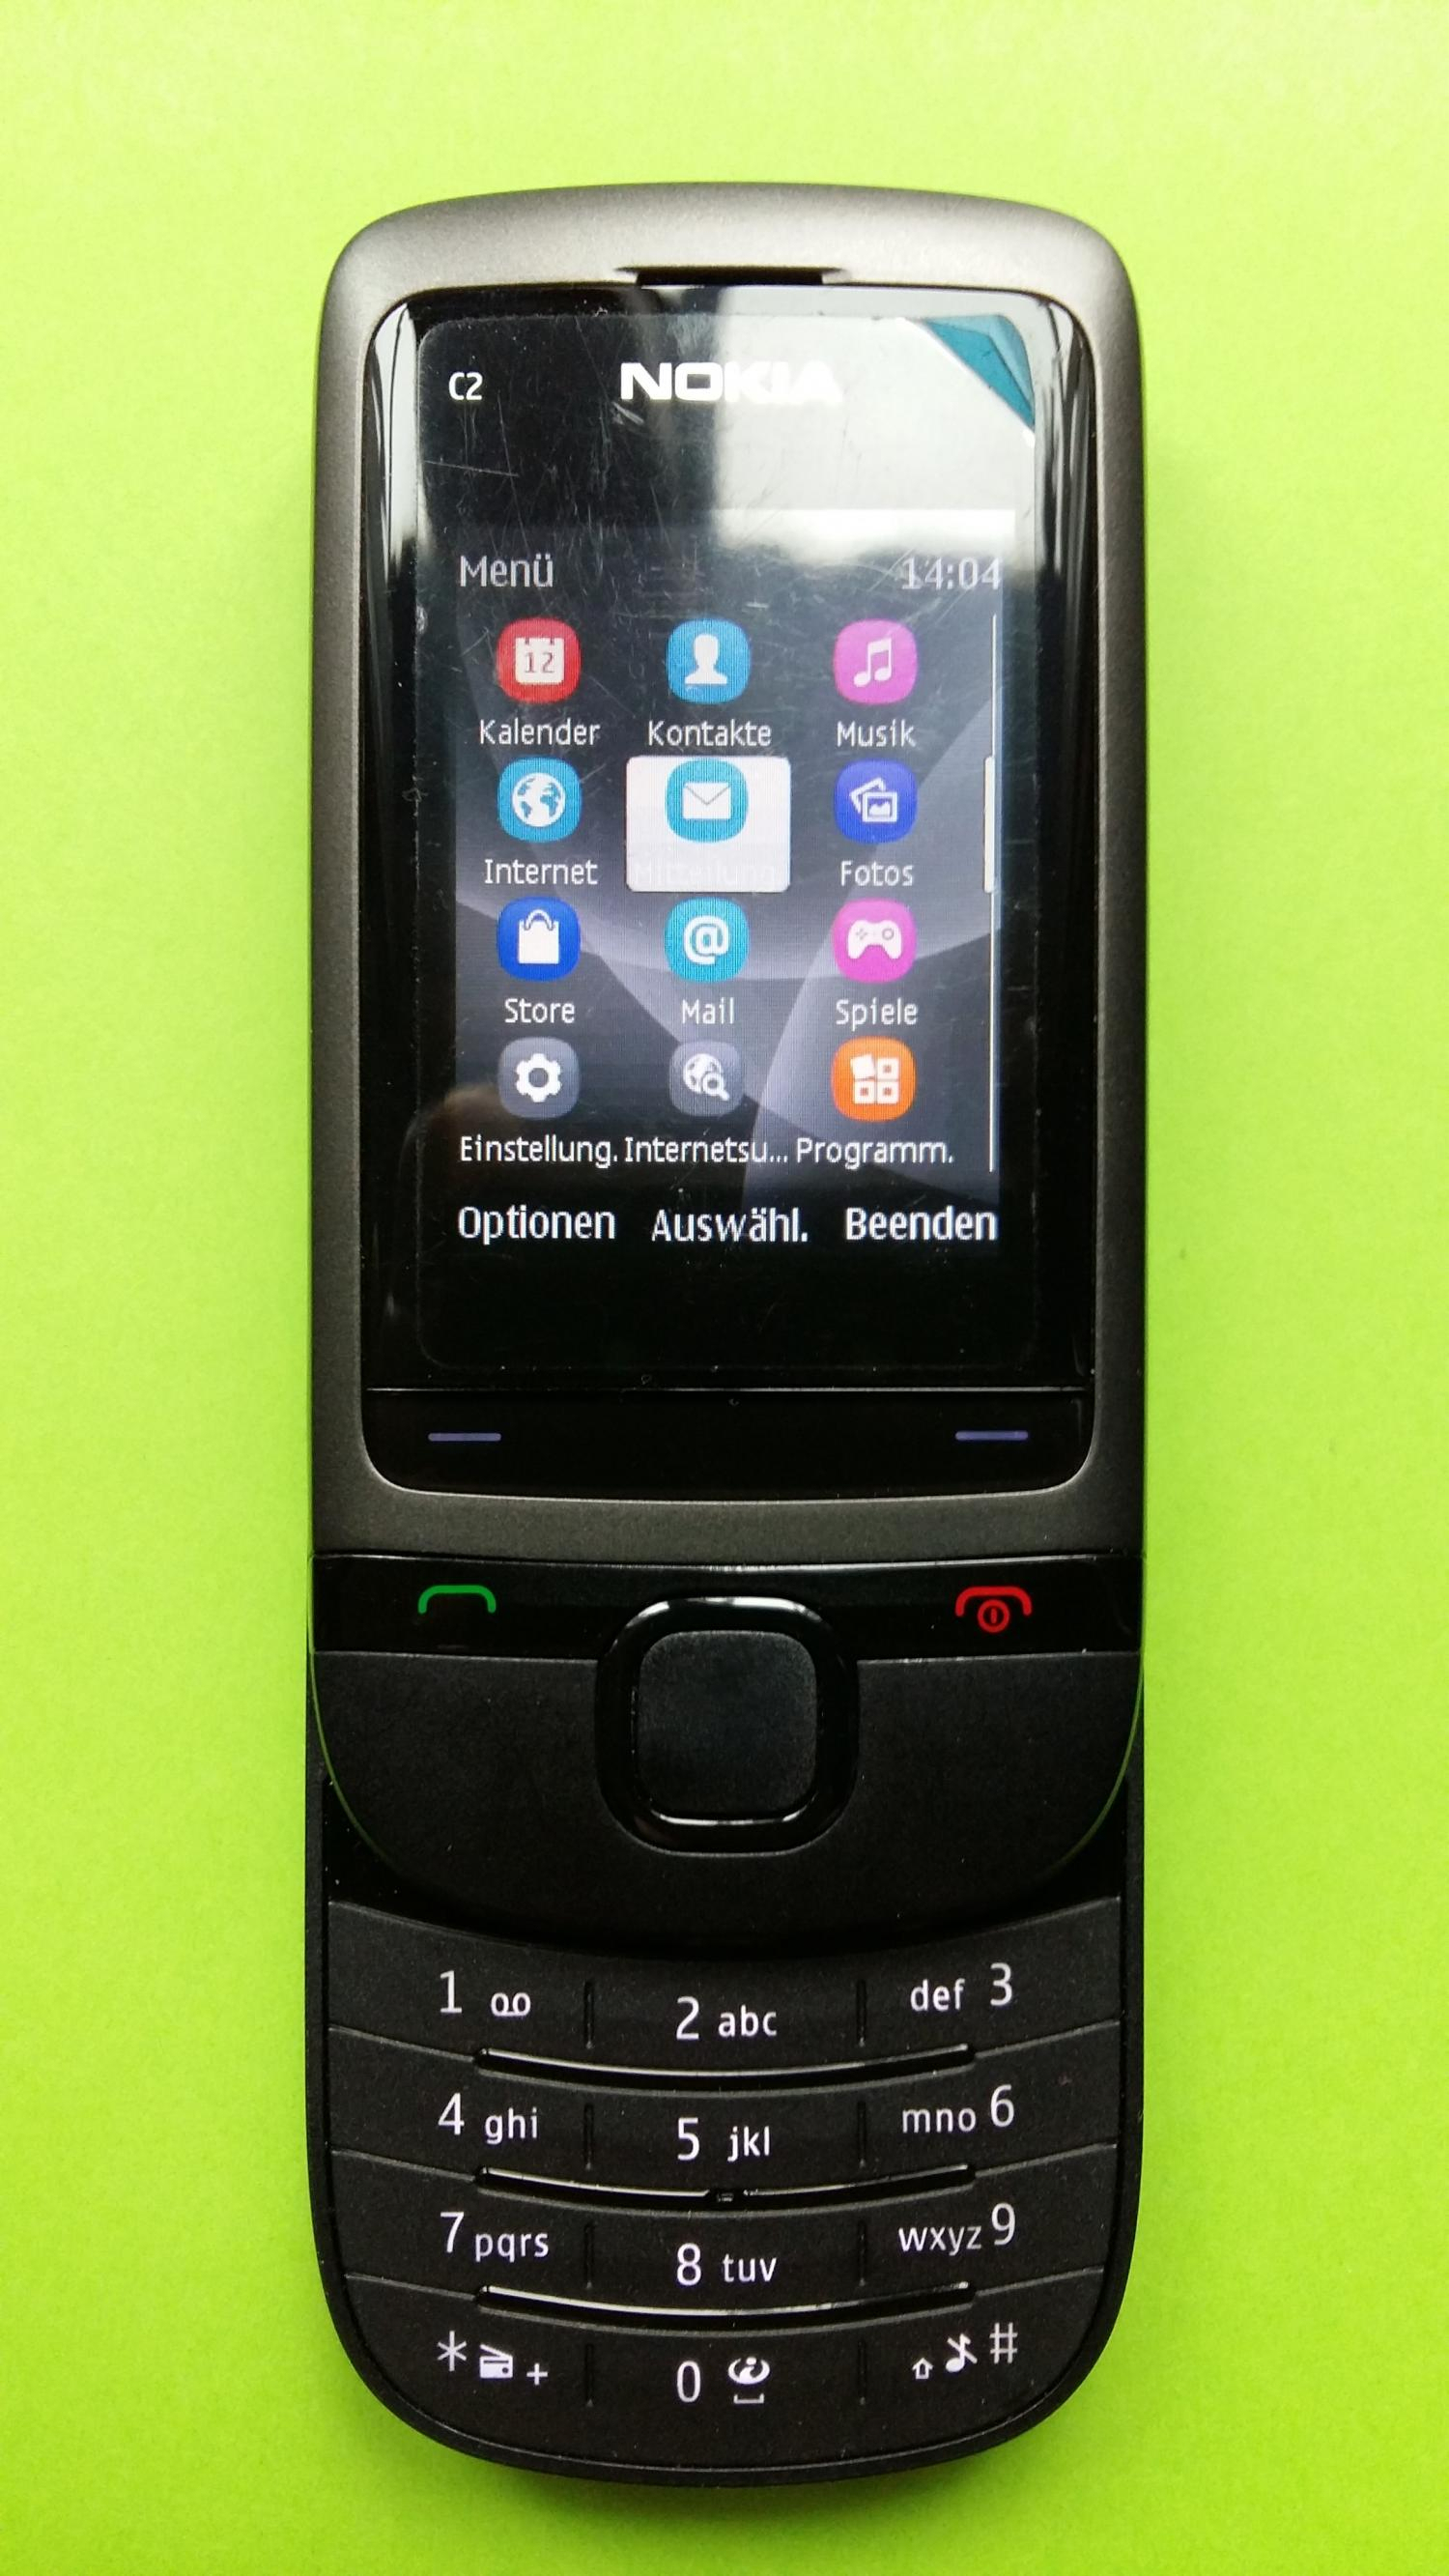 image-7308757-Nokia C2-05 (1)2.jpg